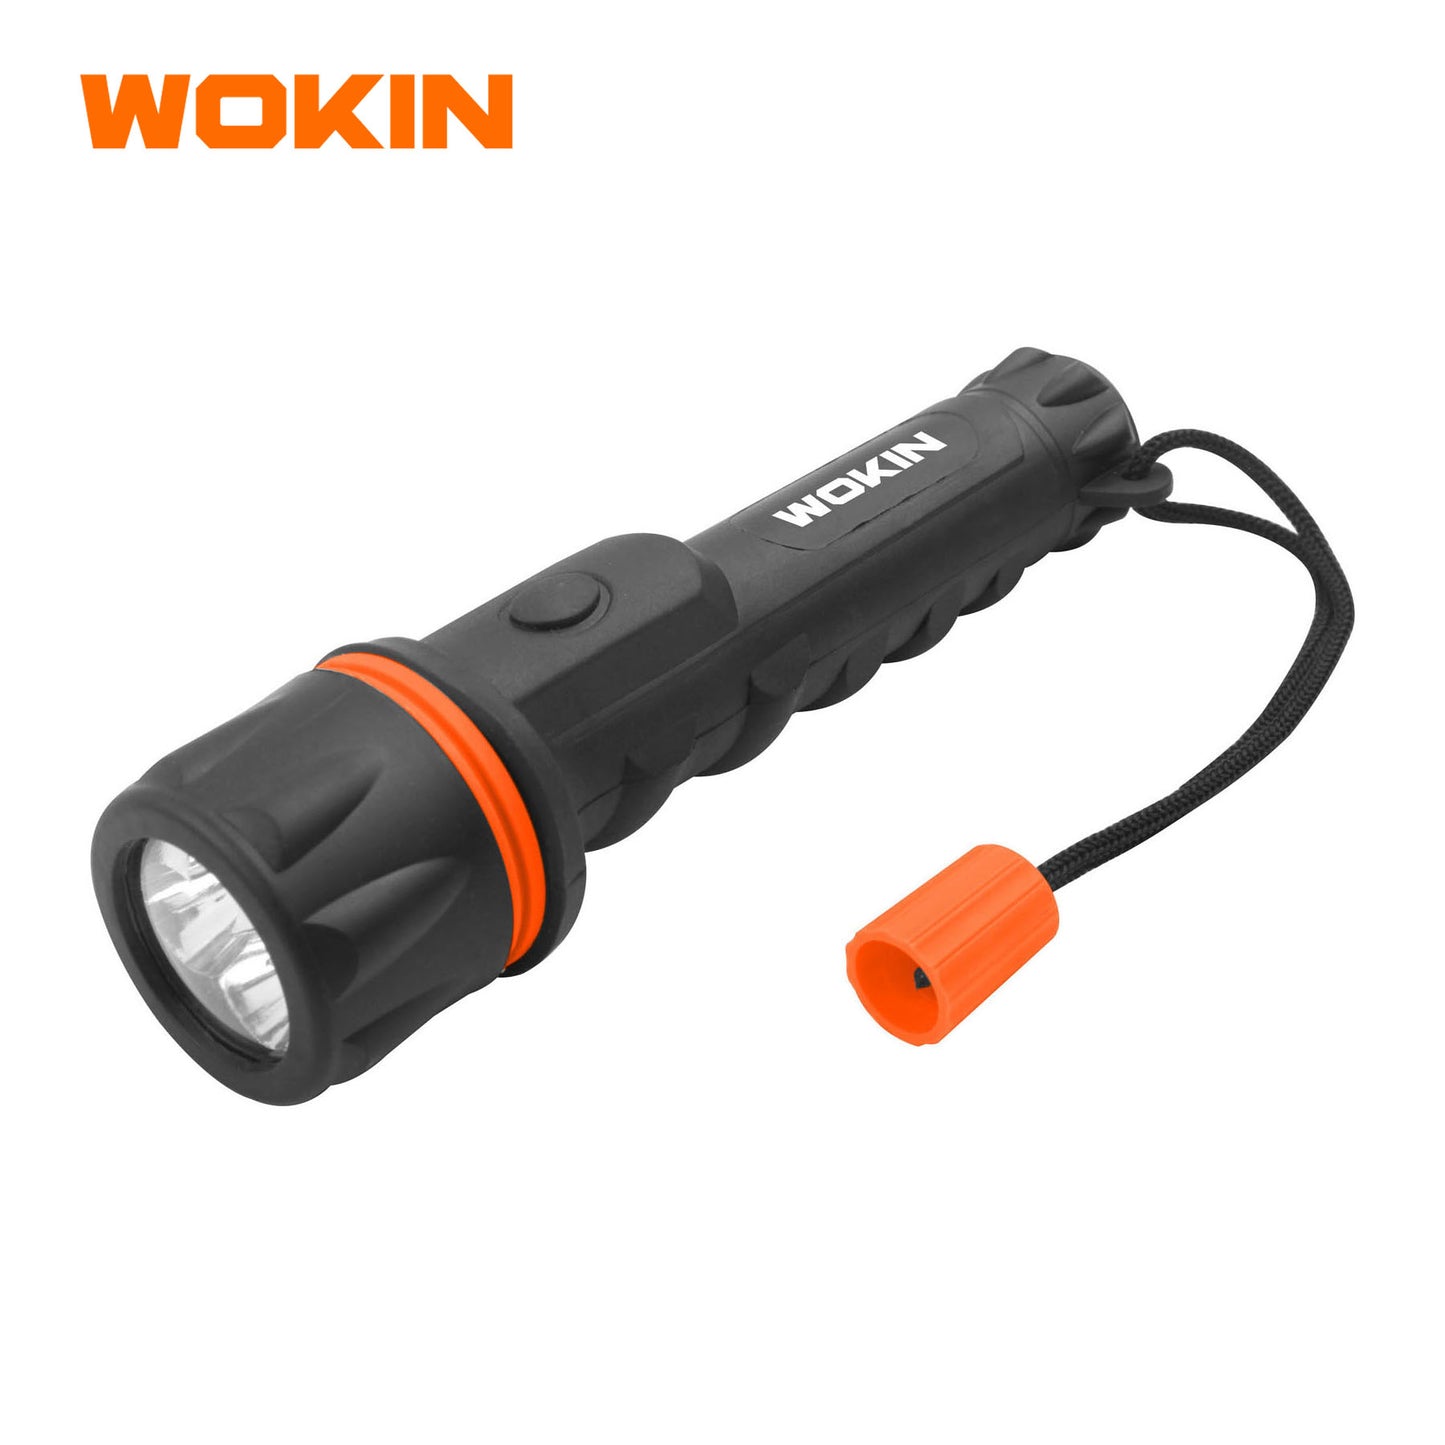 Wokin 12 Lumens LED Flashlight